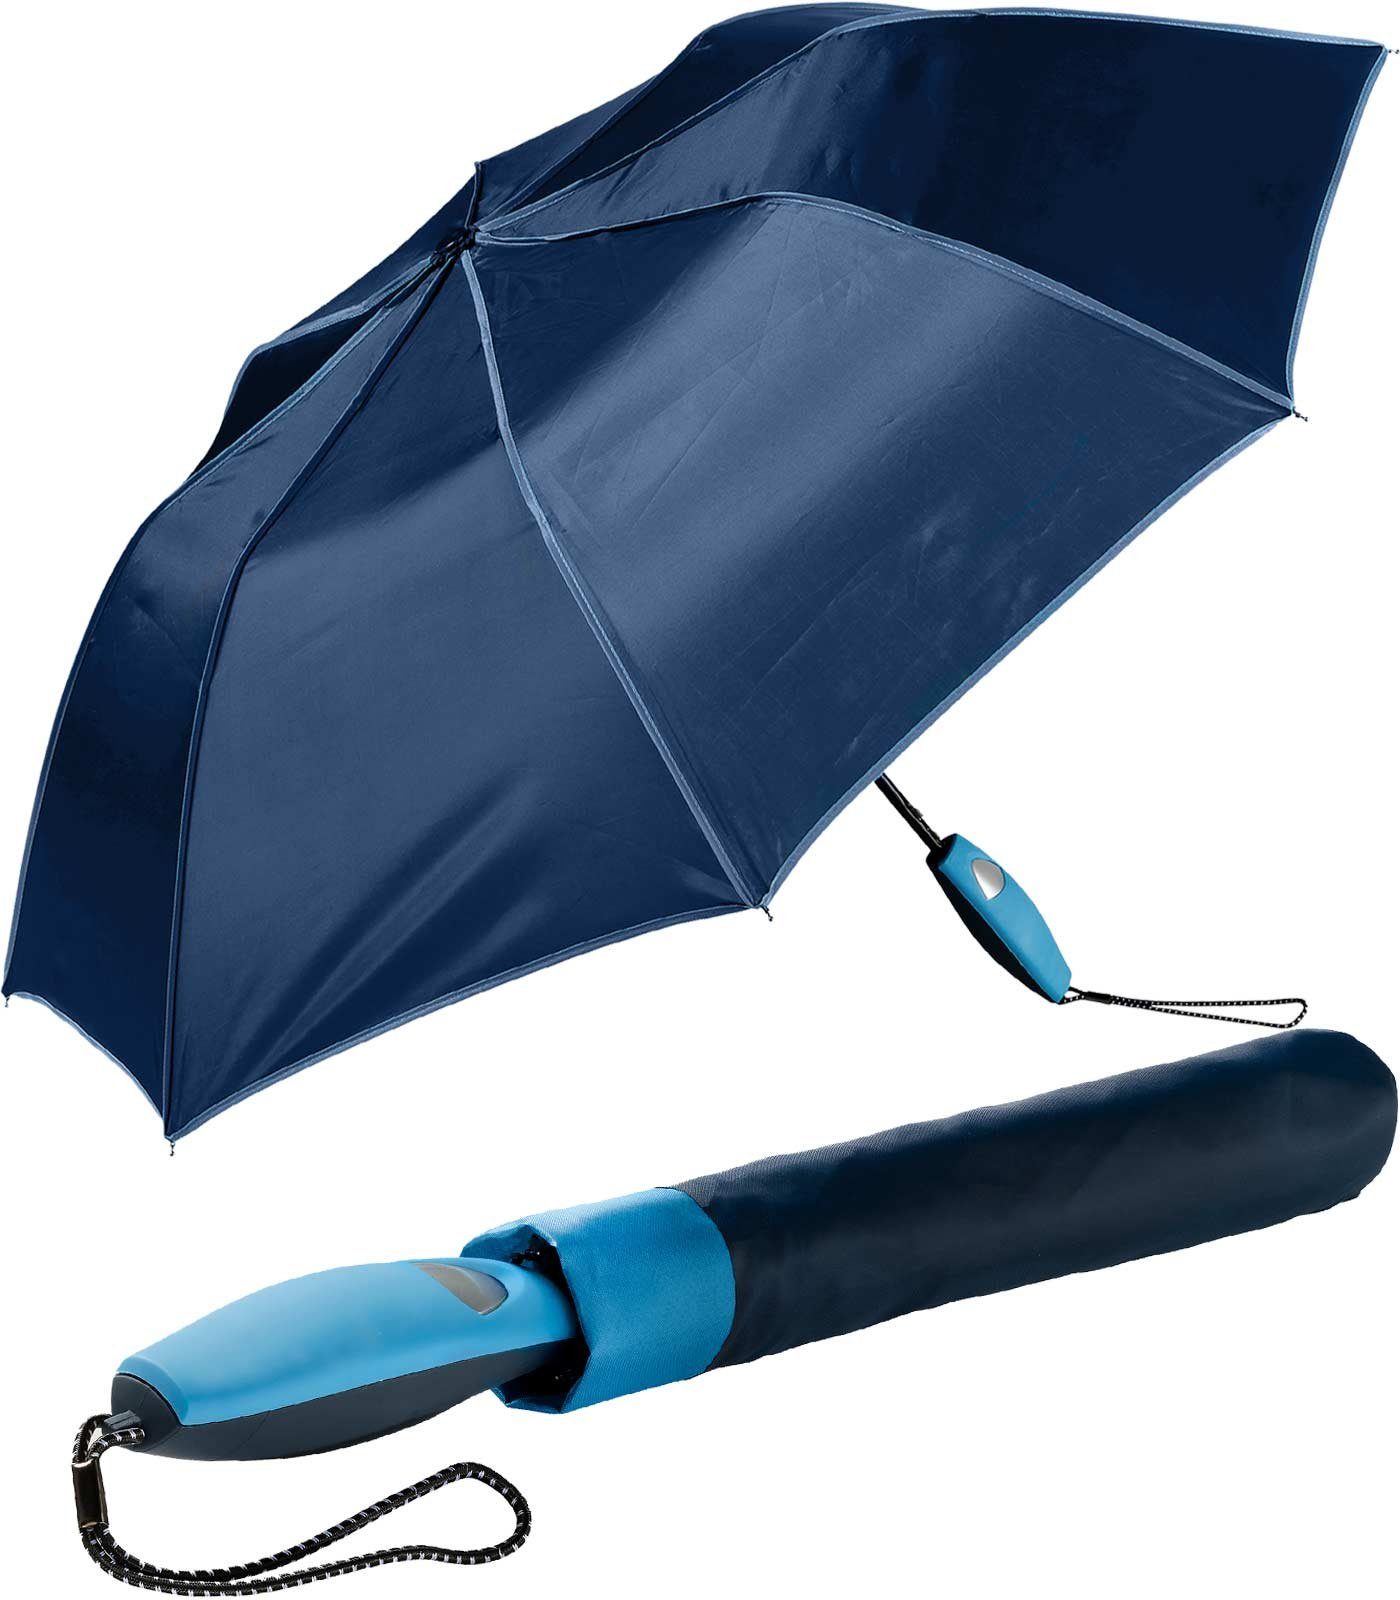 Impliva Taschenregenschirm Falconetti Auf-Automatik farblich passender Griff, auffallend navy-blau